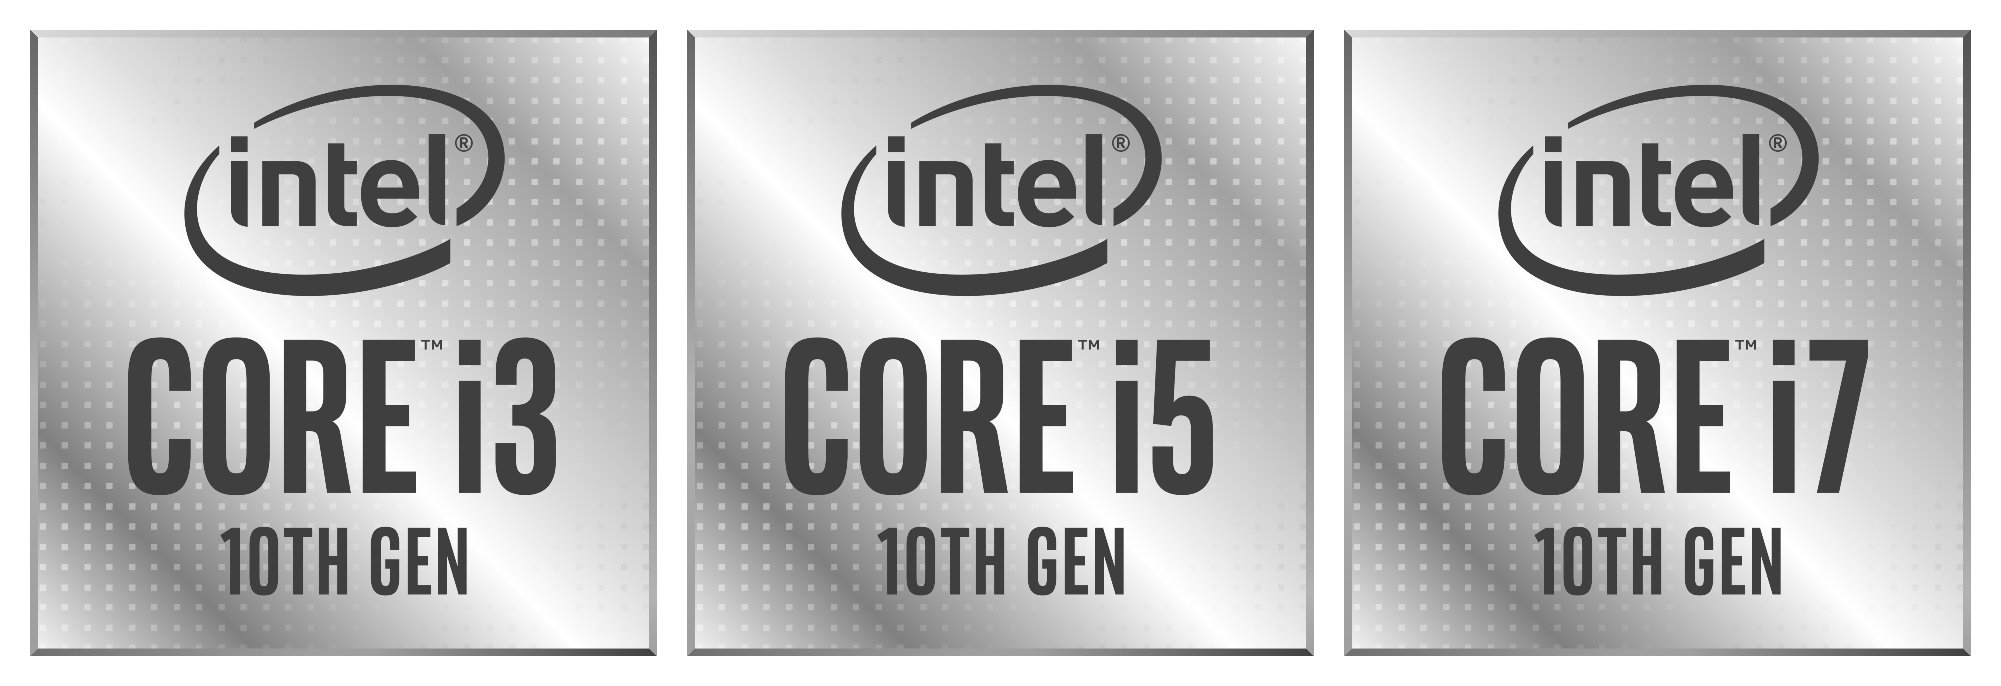 Die drei Logo-Badges der kommenden Core i3, Core i5 und Core i7 Modelle der 10. Generation.